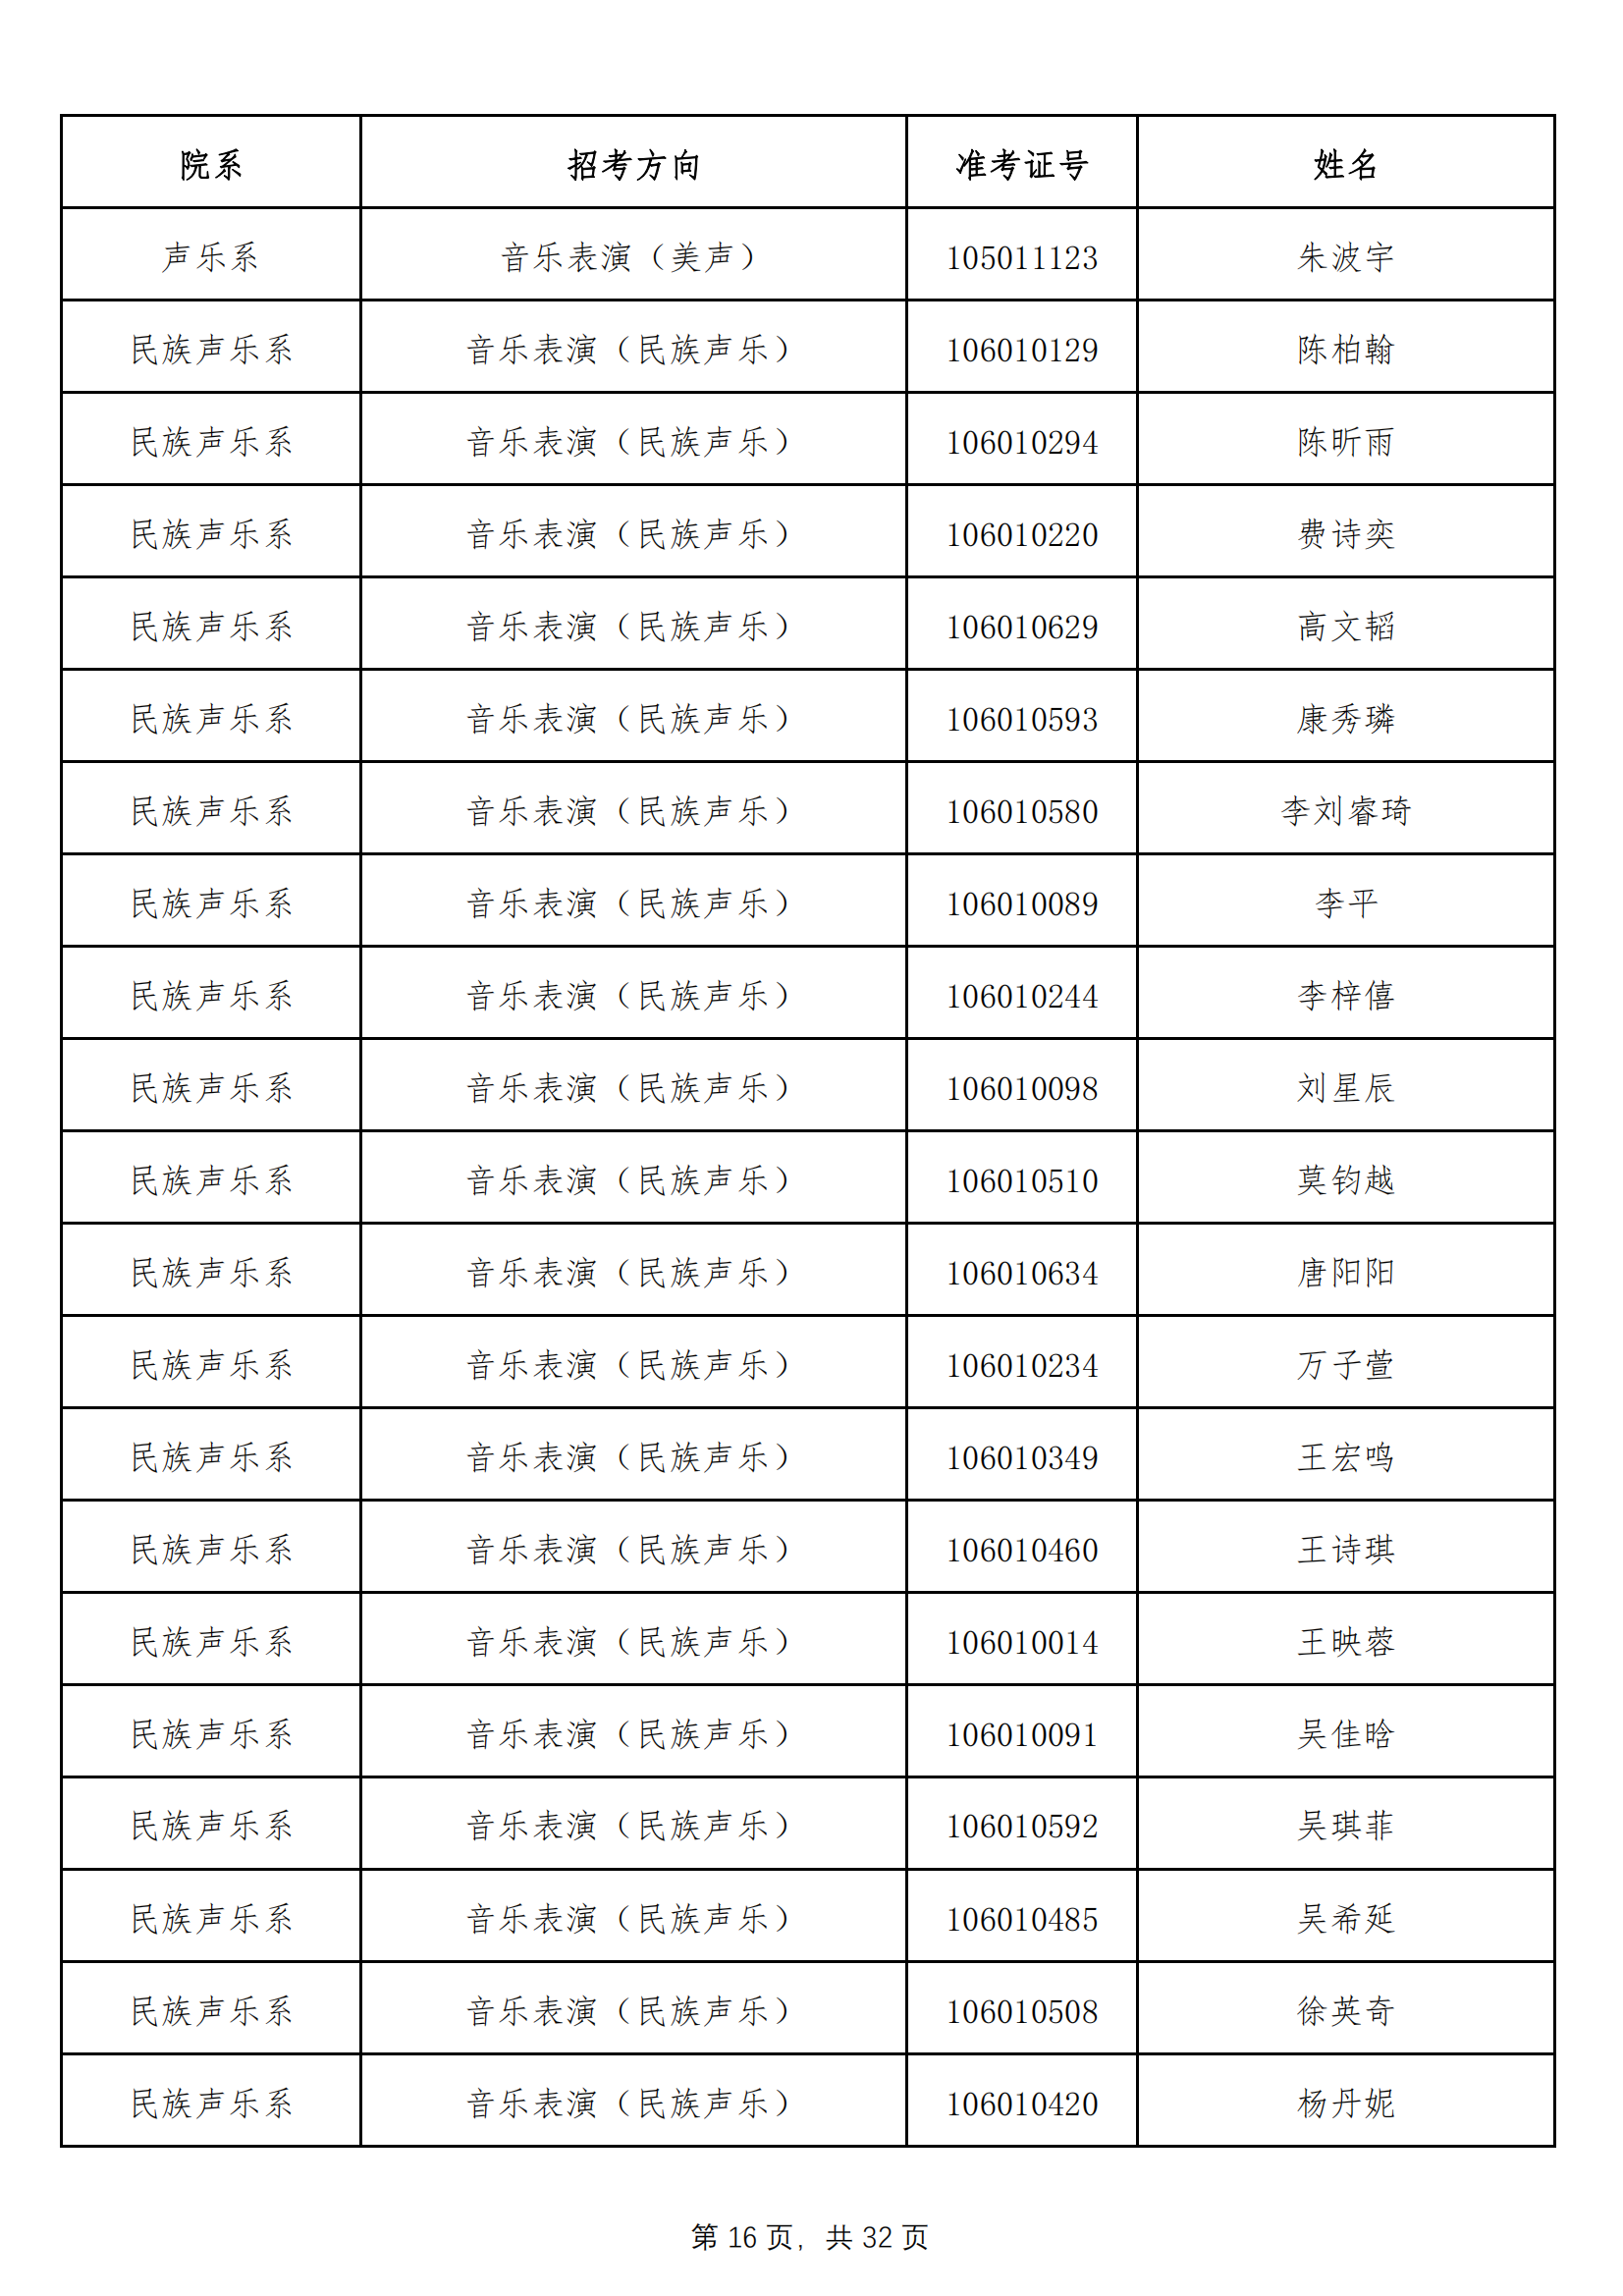 天津音乐学院2022年本科招生拟录取名单 （除上海考生外）_15.png